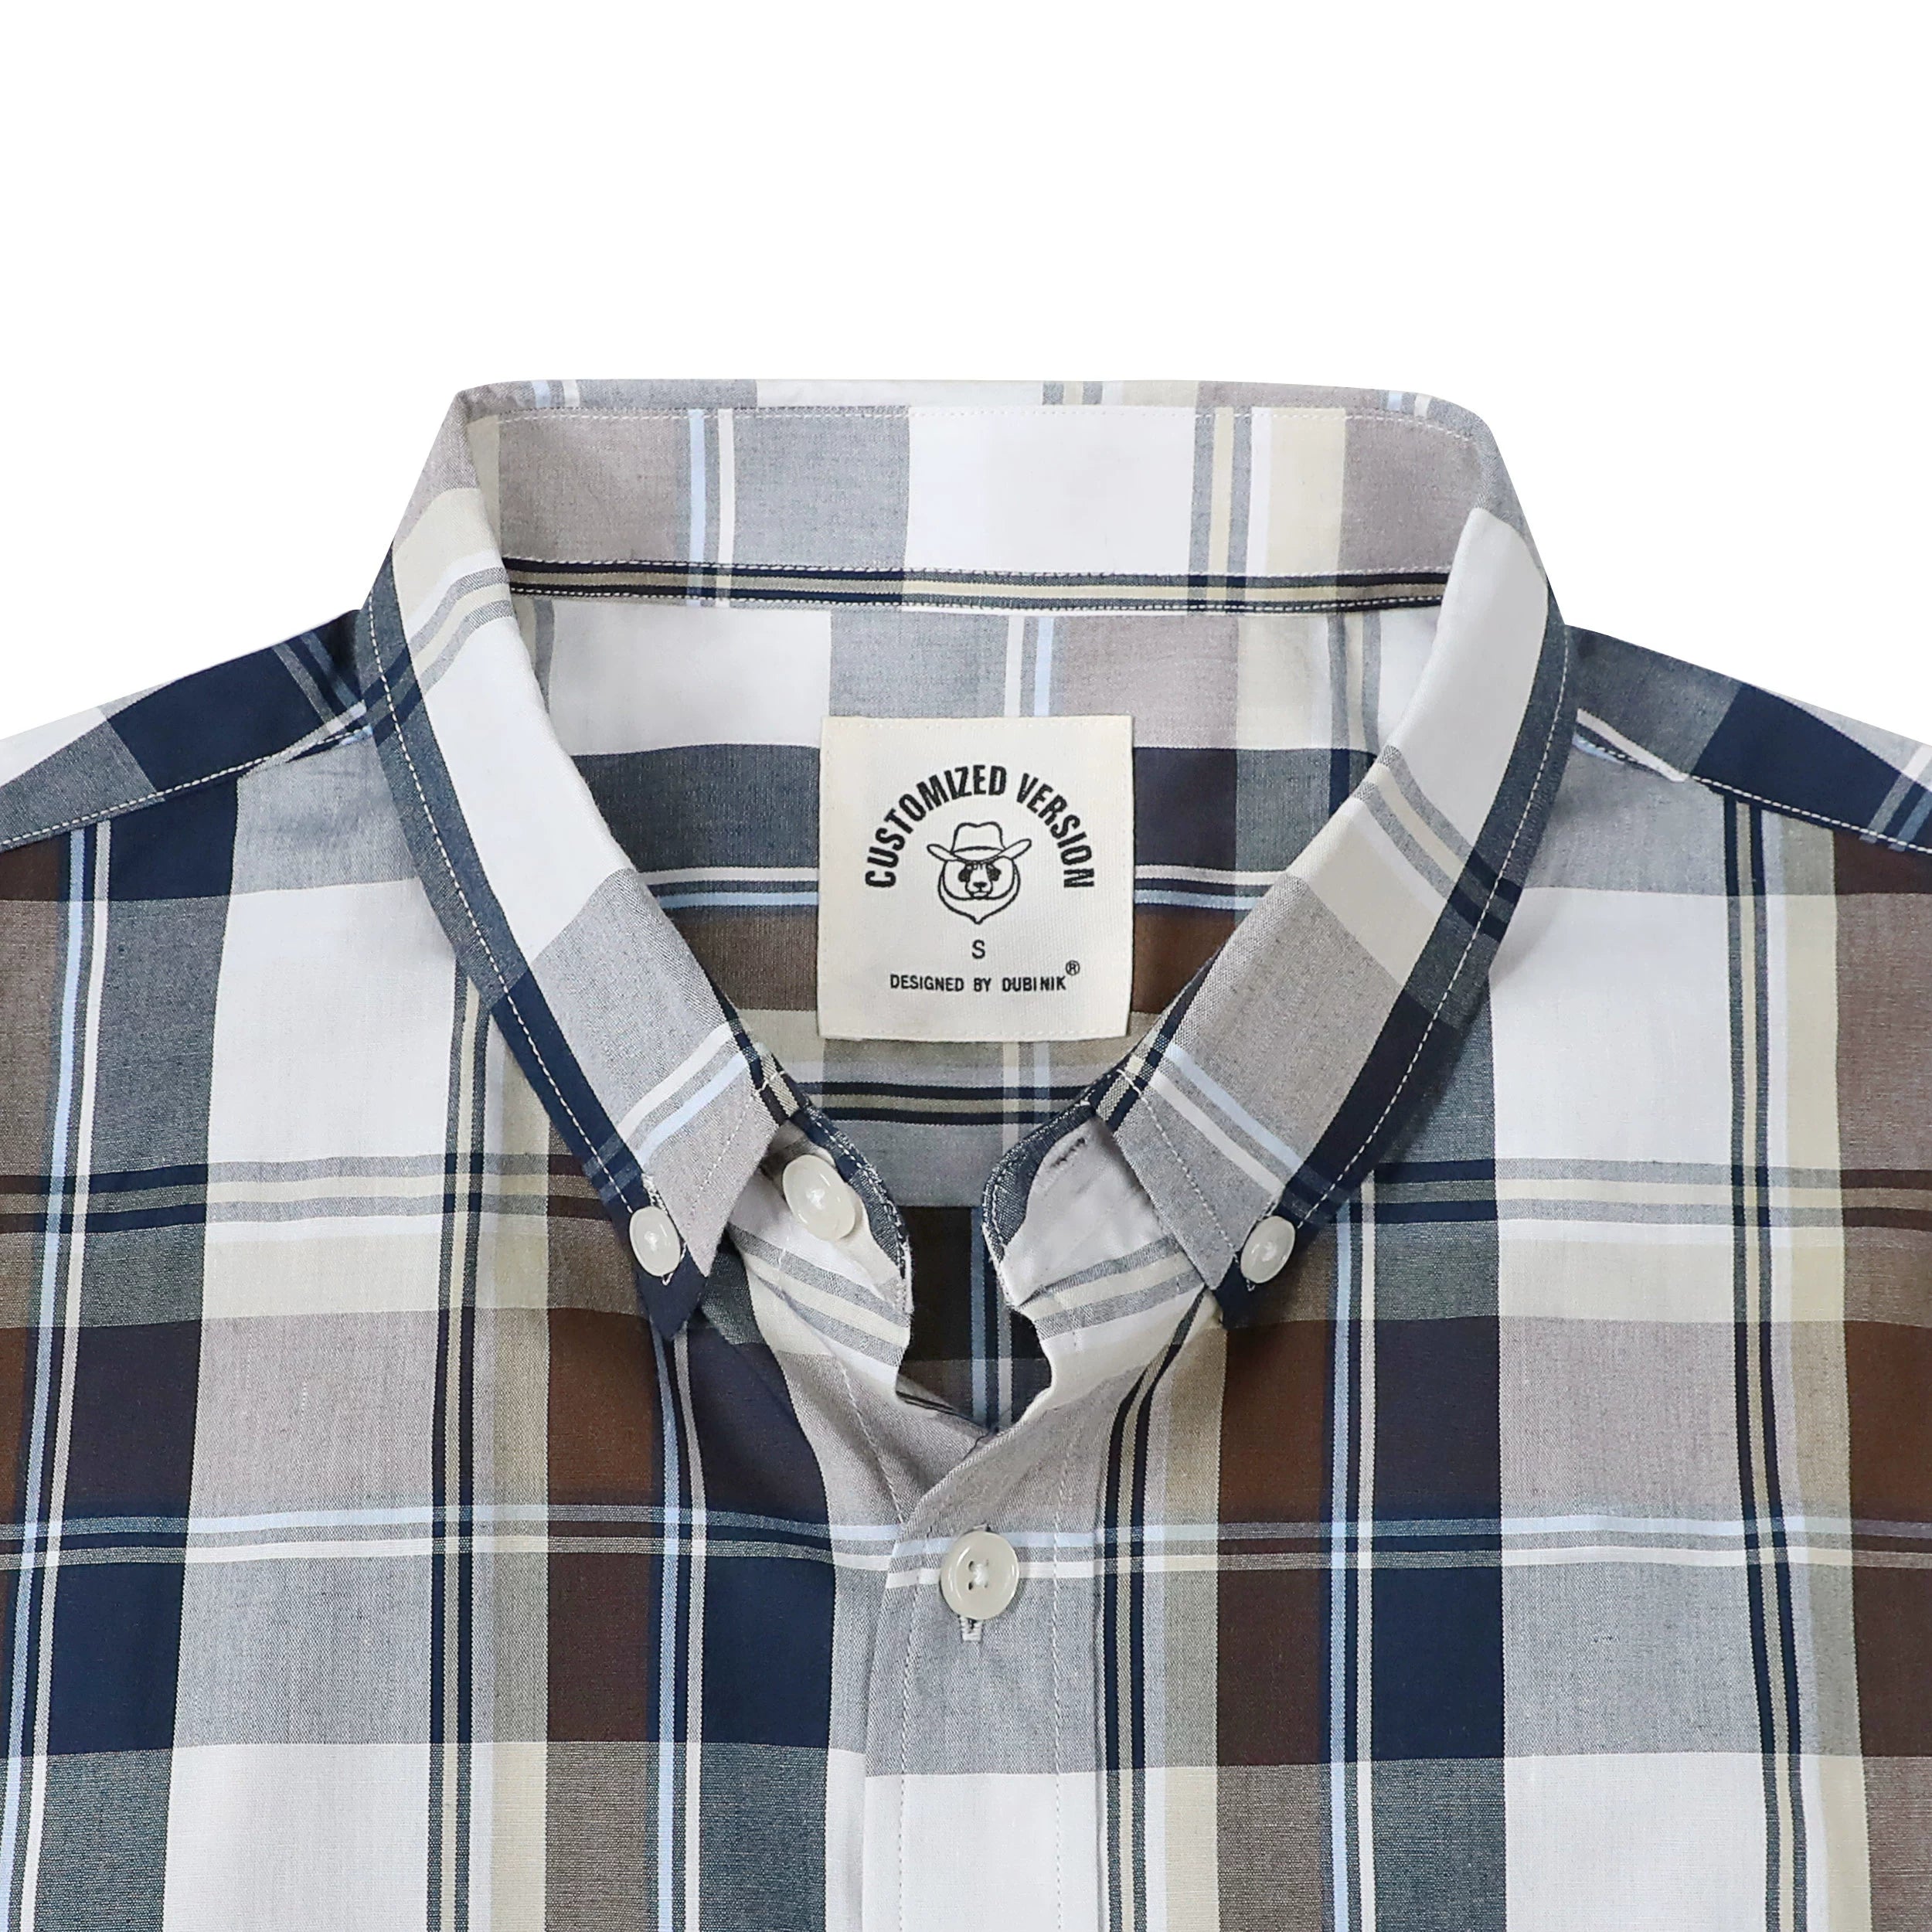 Dubinik® Mens Short Sleeve Button Down Shirts Summer Vintage Short Sleeve Button Down Men Lightweight Men's Casual Shirts#51006